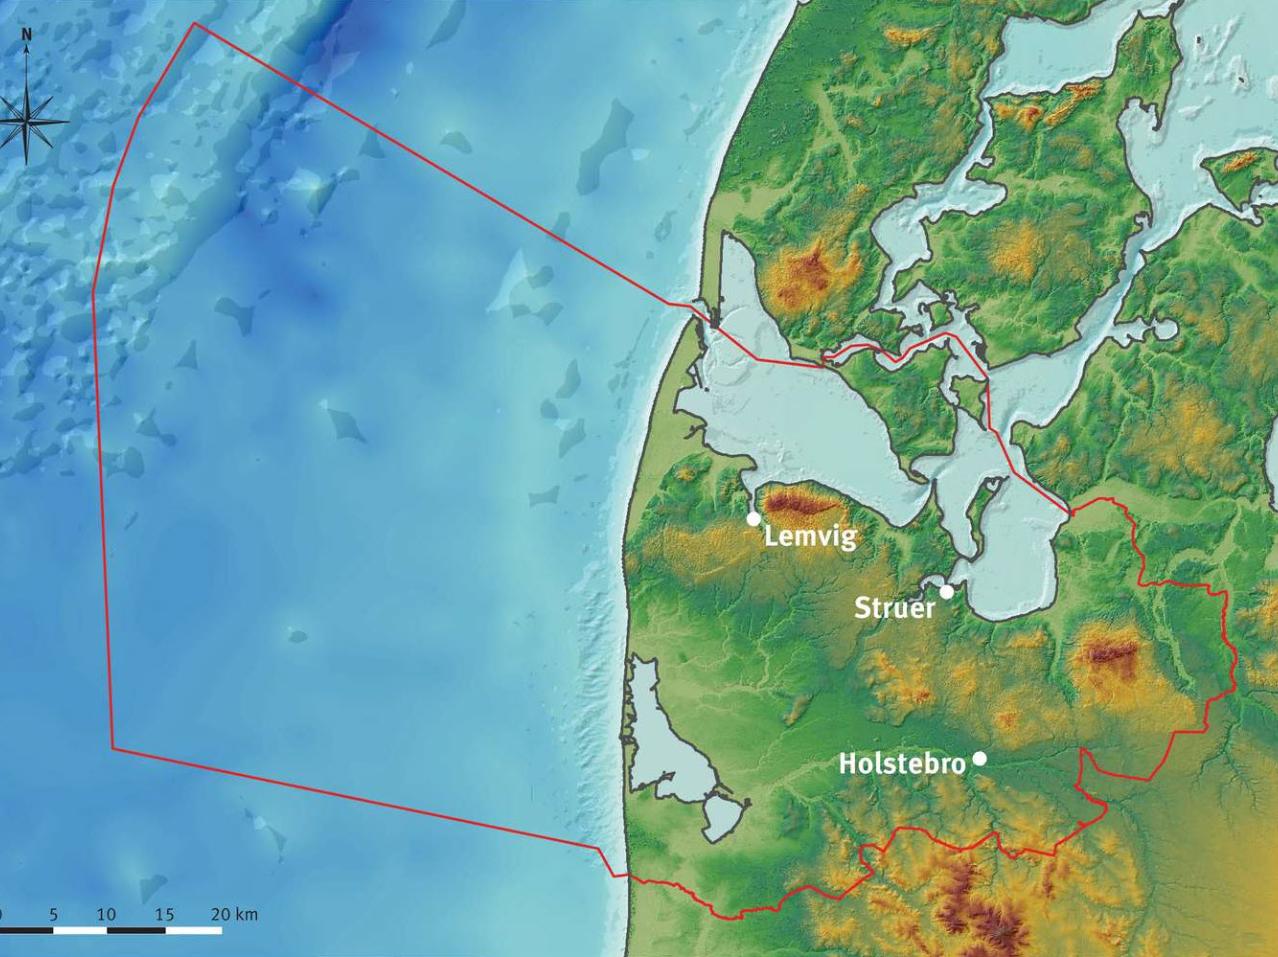 Billedet viser geografisk placering af Geopark Vestjylland